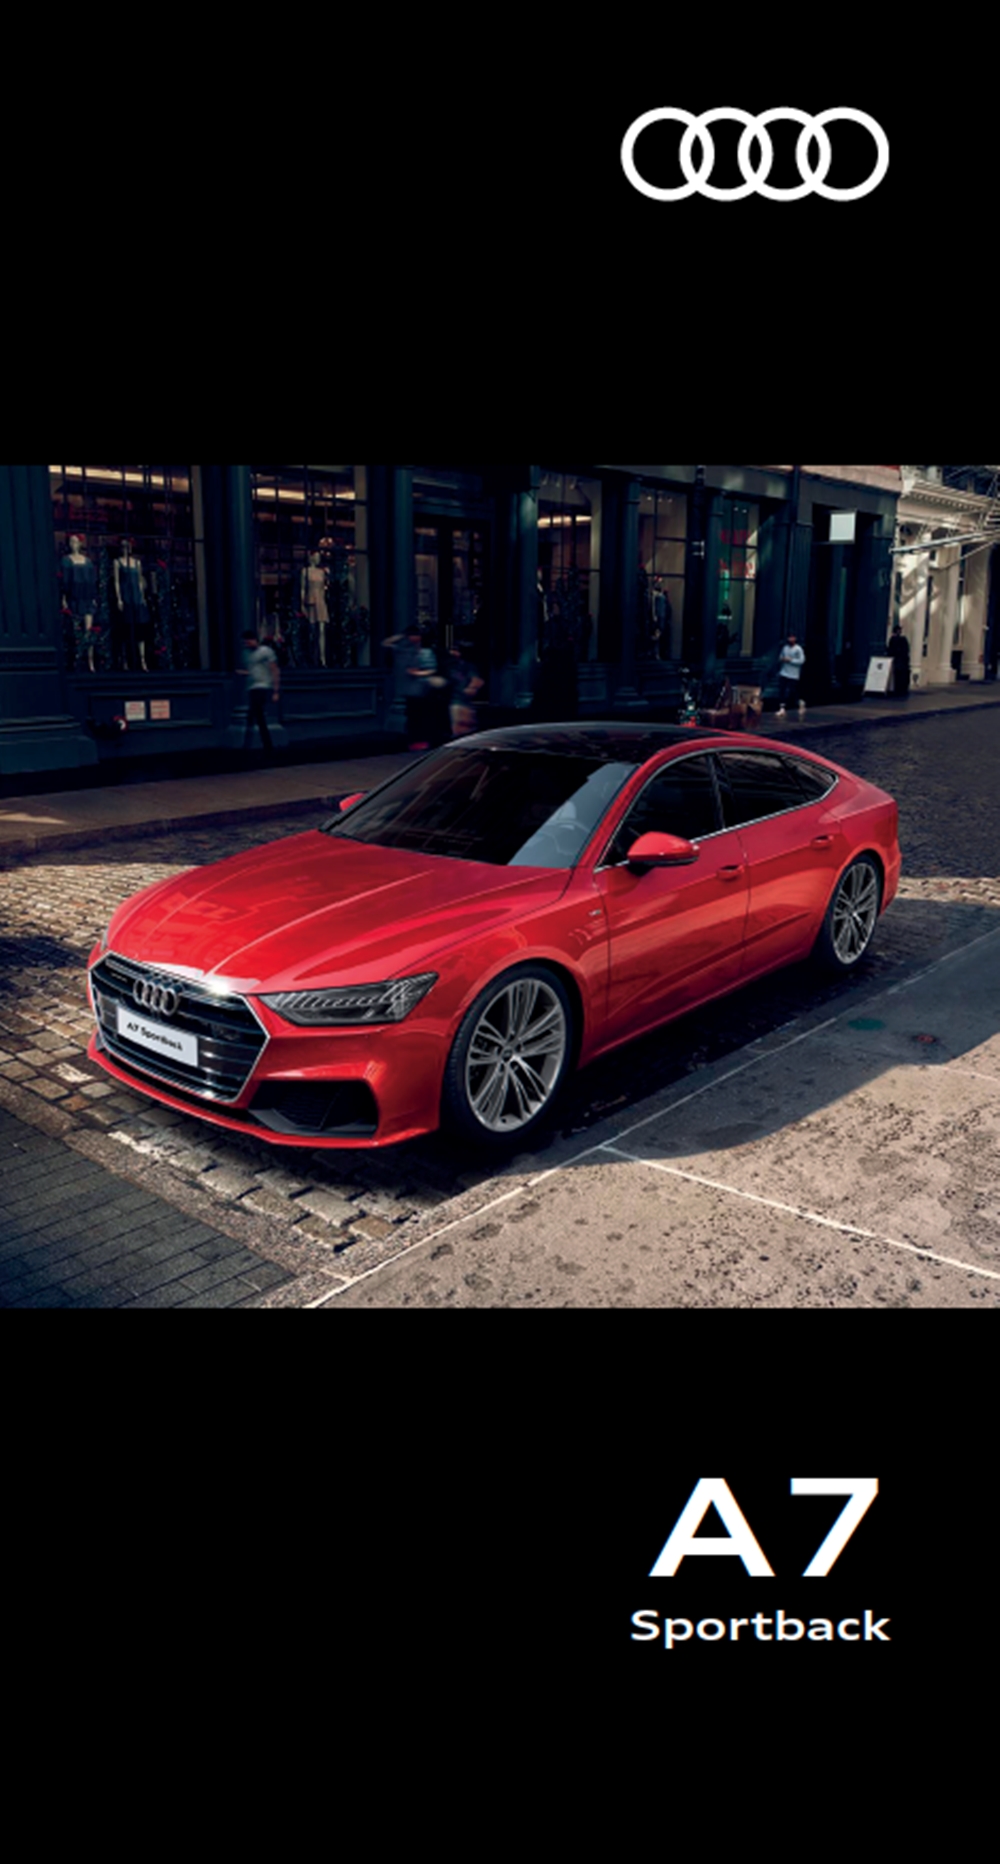 Audi จัดหนัก! คว้ารางวัลคุณภาพจากนิตยสารรถชื่อดังของทวีปยุโรปไปครองเพียบ